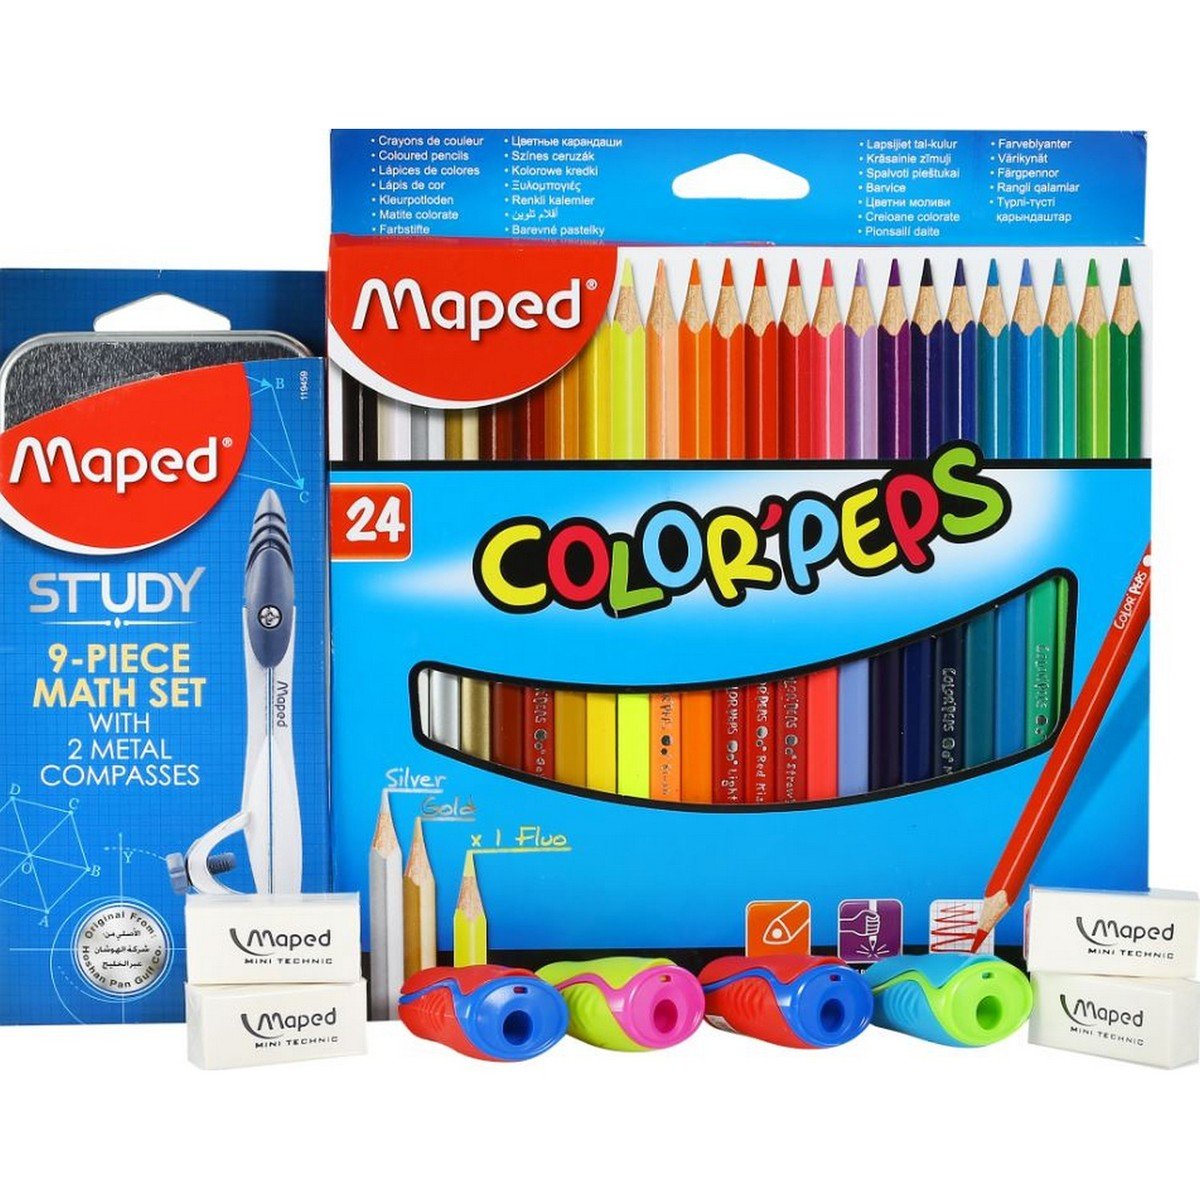 Maped Color Pencil 24Pcs + Math Set 1 Box + Eraser 4Pcs + Sharpener 4Pcs